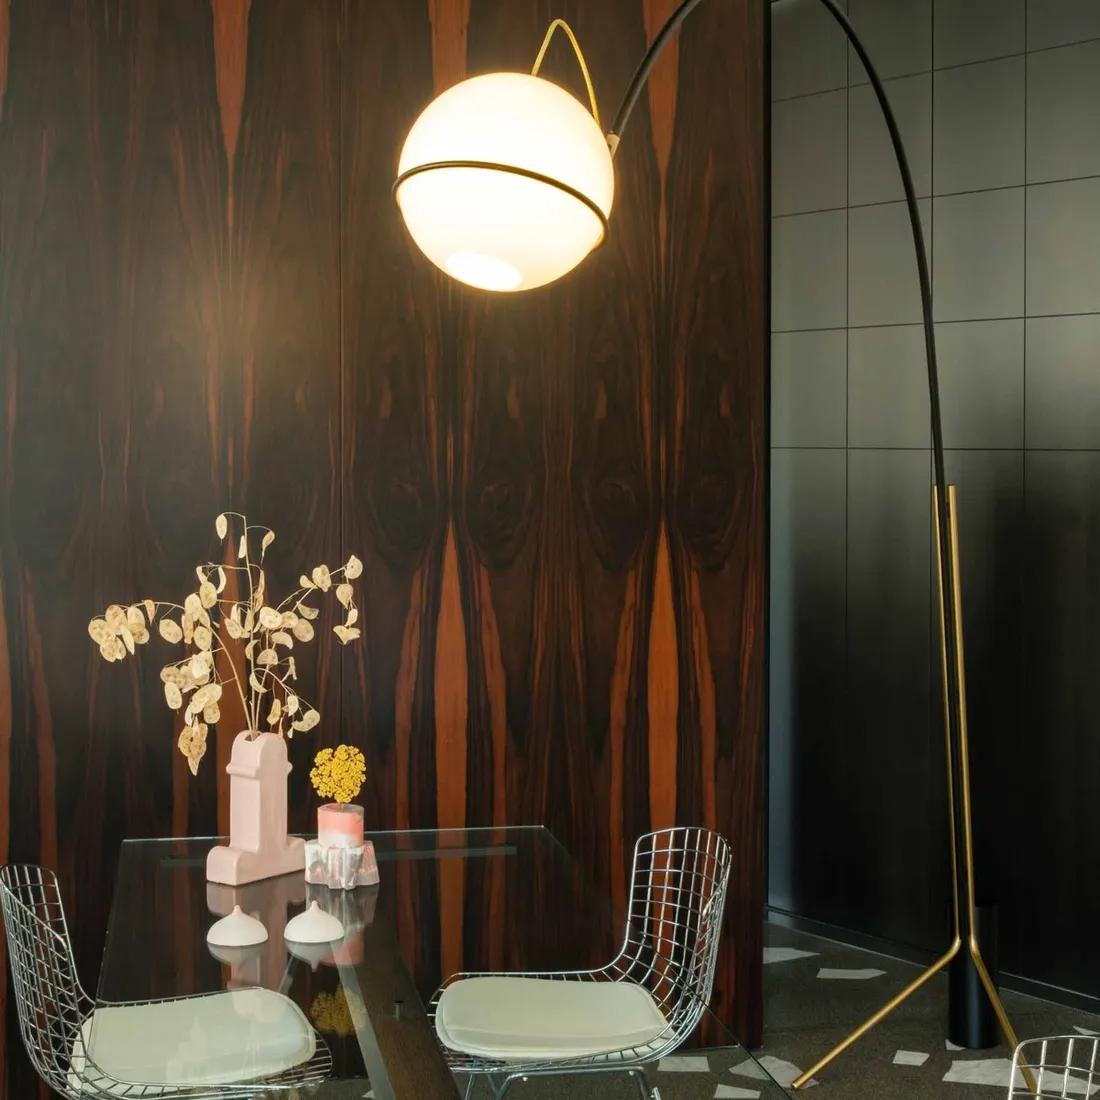 Francesco Librizzi 'Alicanto' Stehleuchte für Fontana Arte in Schwarz und Gold.

Der elegante Minimalismus dieser Stehlampe aus geblasenem Glas und schwarz lackiertem Metall mit goldenen Akzenten macht sie zu einem schönen Mittelpunkt in jedem Raum.